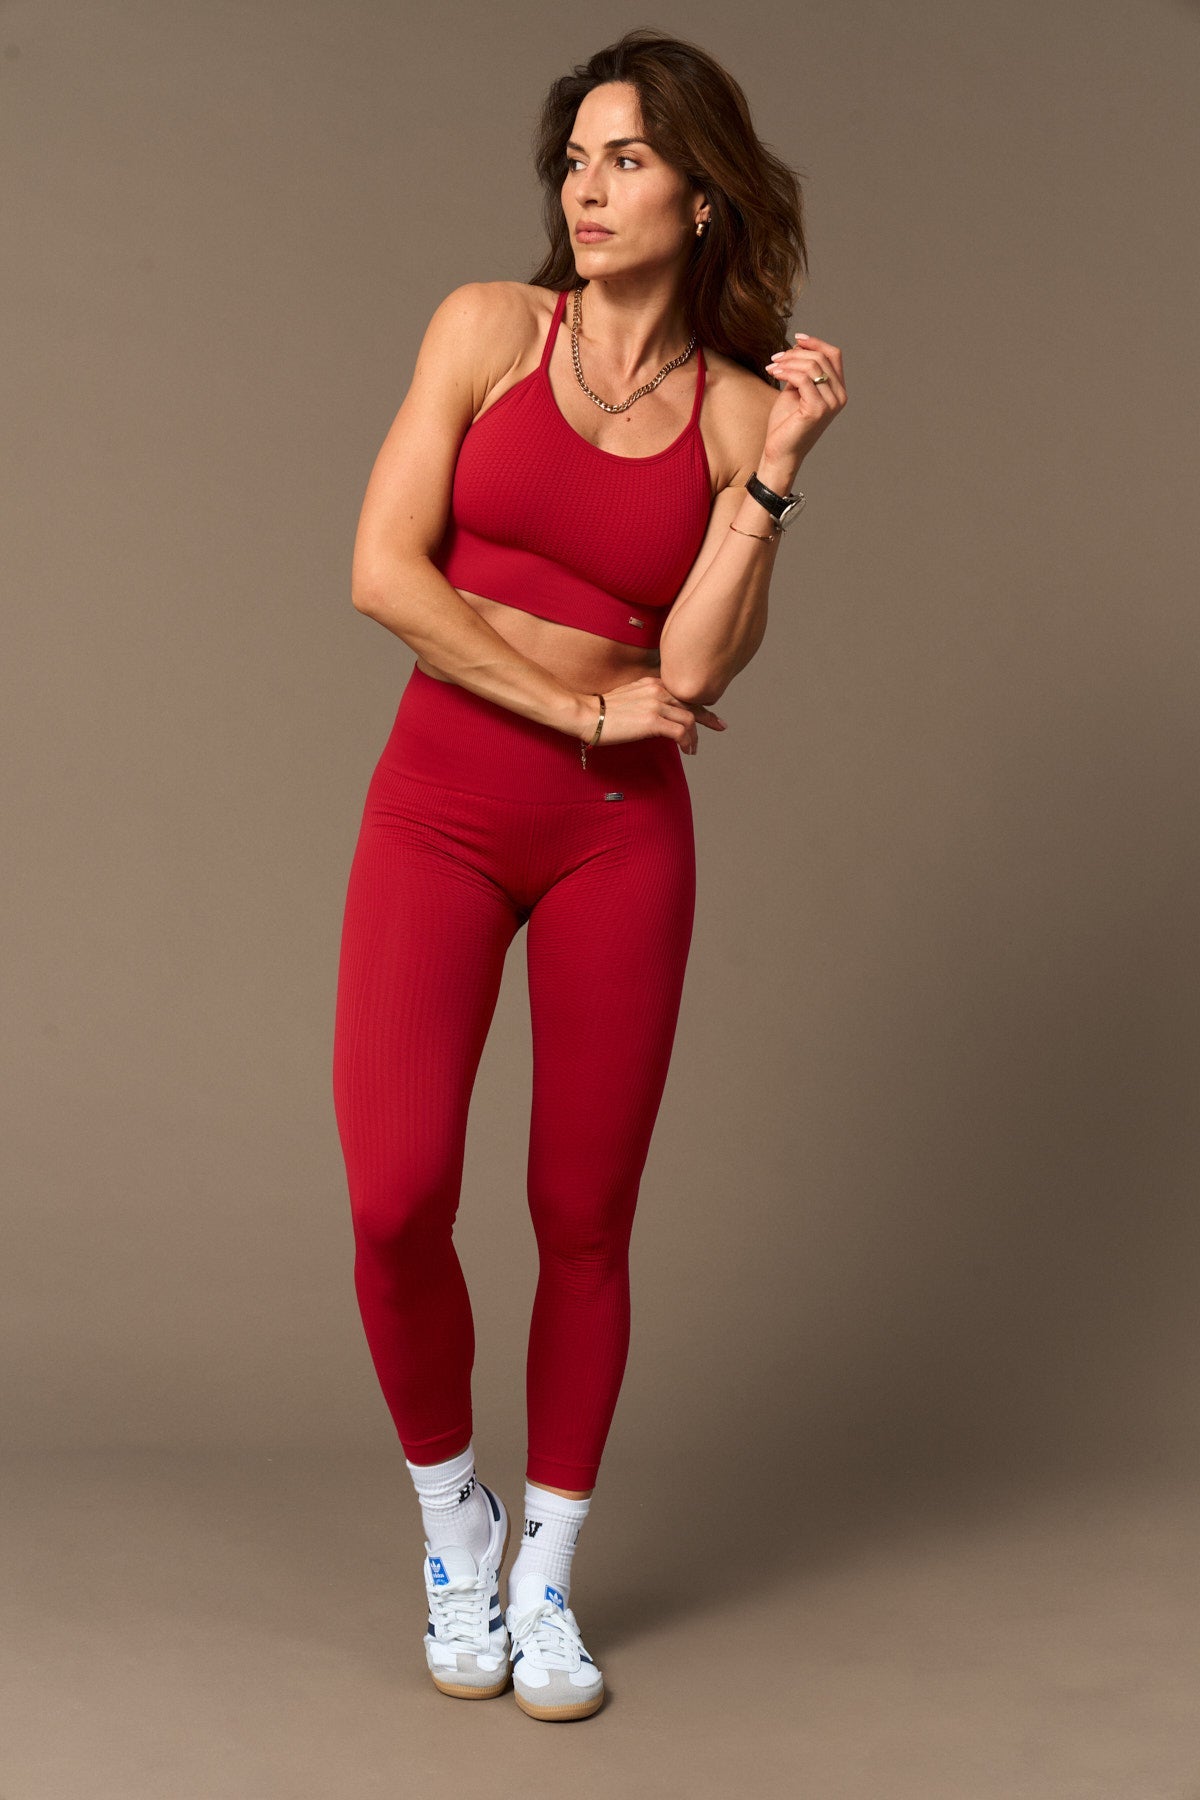 Vinyasa Bra Rojo-Bras-Tienda Ropa Leggings Yoga Sostenibles Reciclados Mujer On-line Barcelona Believe Athletics Sustainable Recycled Yoga Clothes